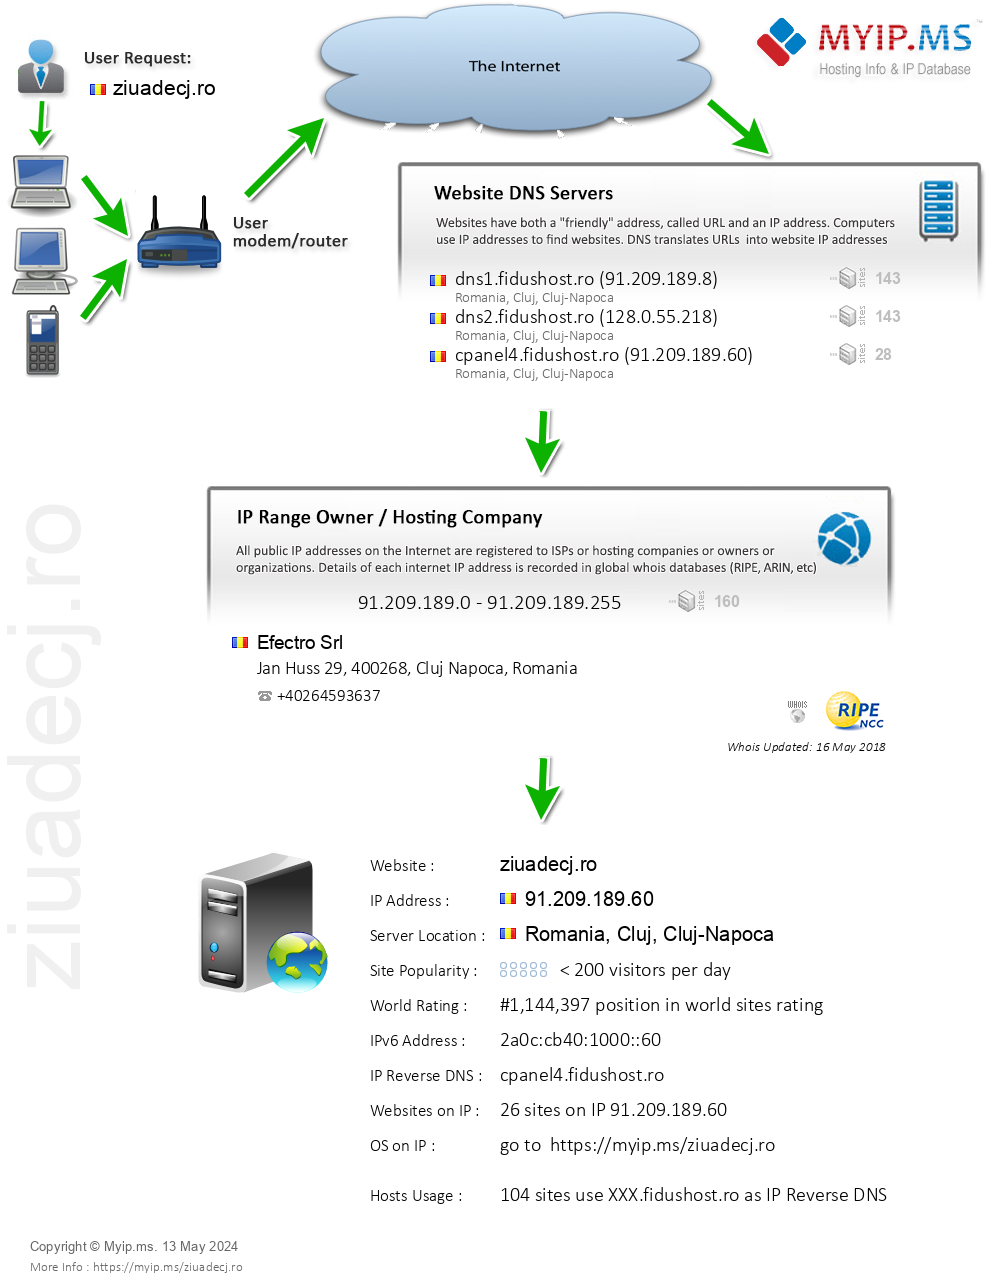 Ziuadecj.ro - Website Hosting Visual IP Diagram